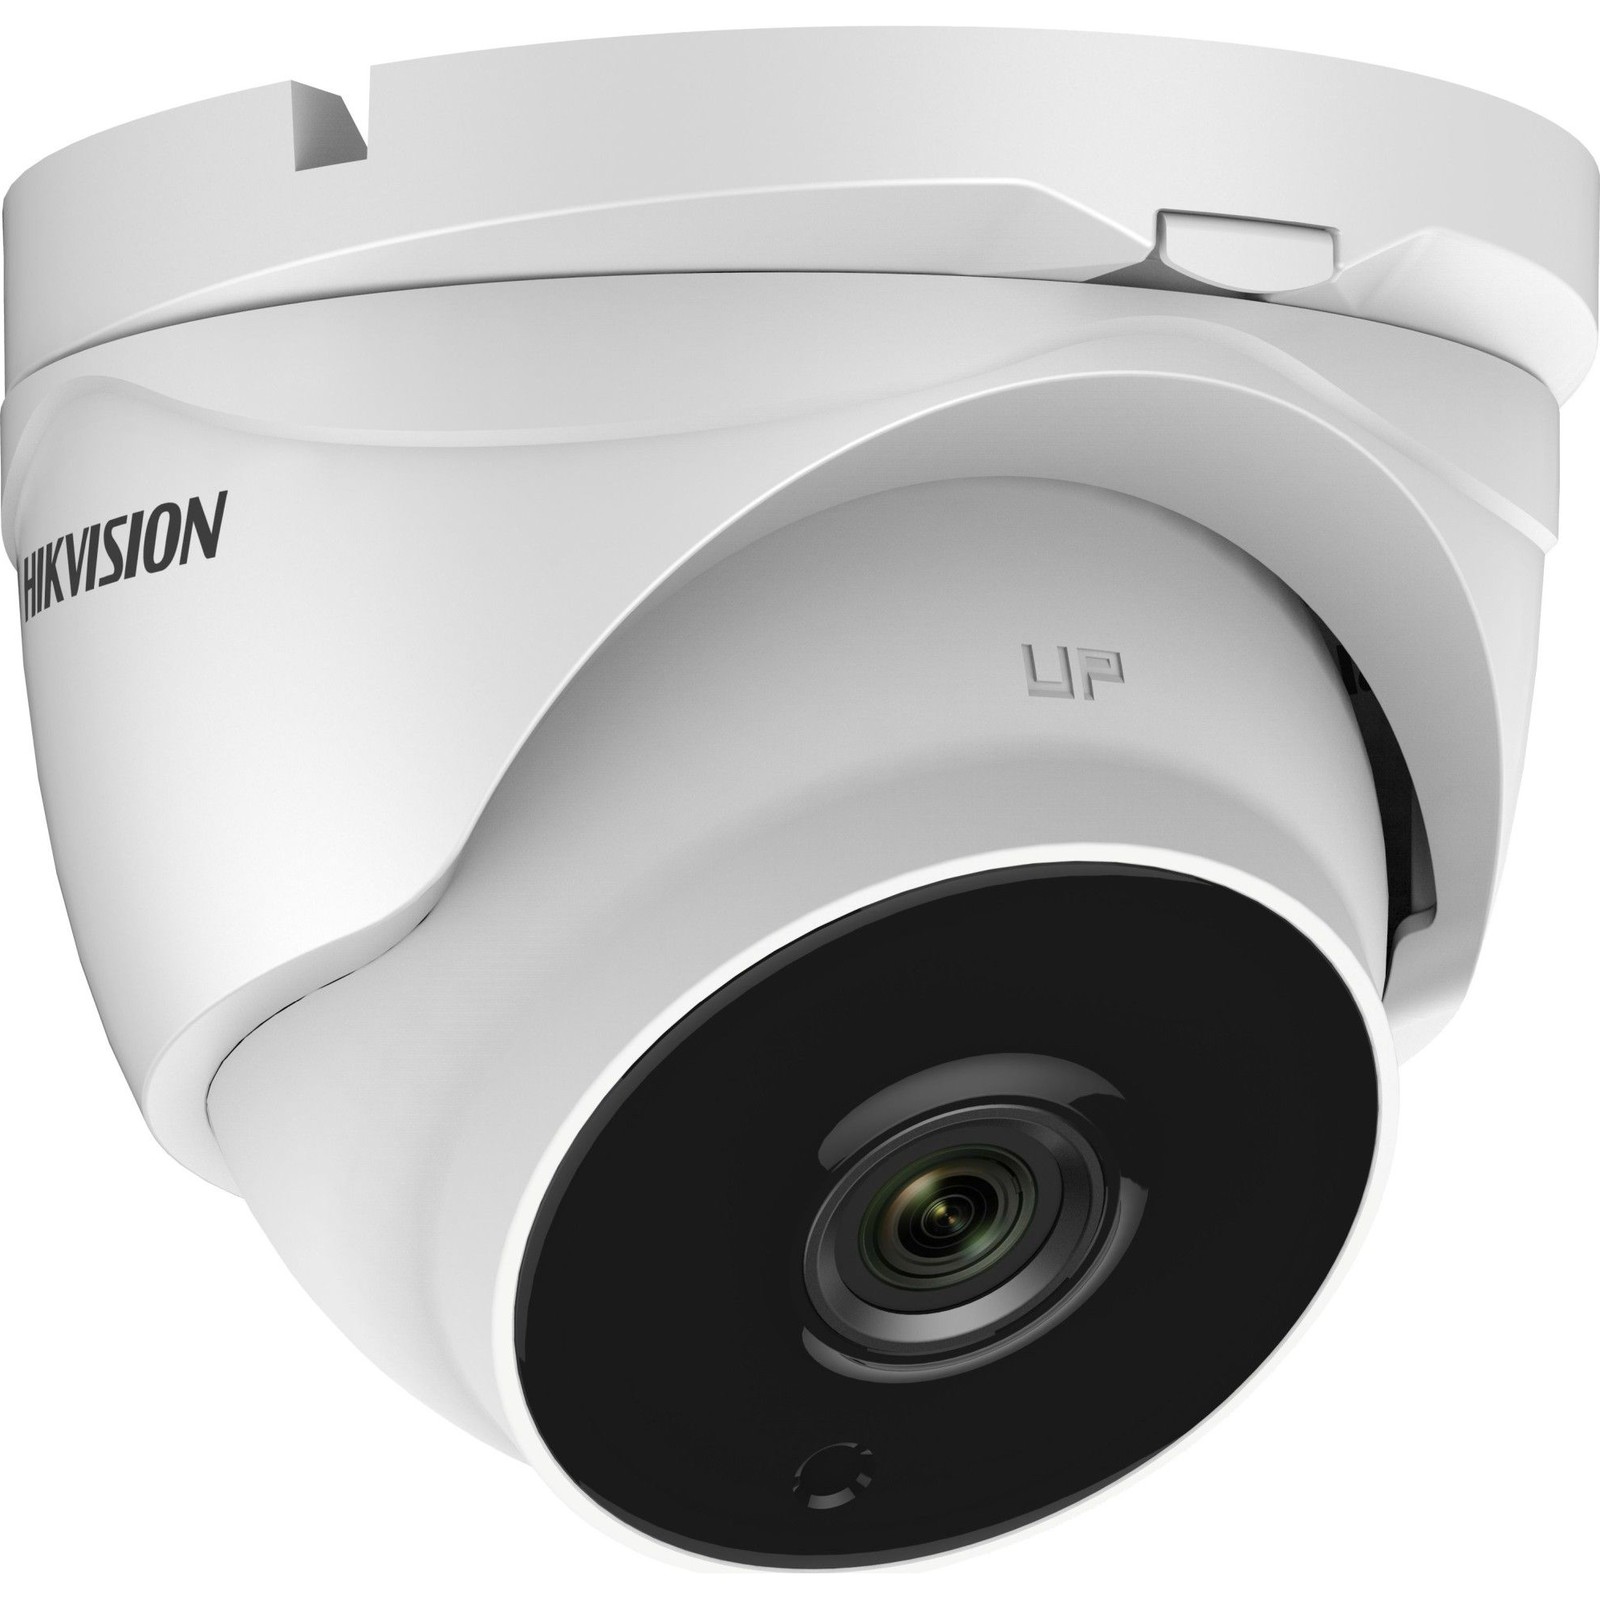 Hikvision DS-2CE56D8T-IT3ZE 2MP External Turret Camera